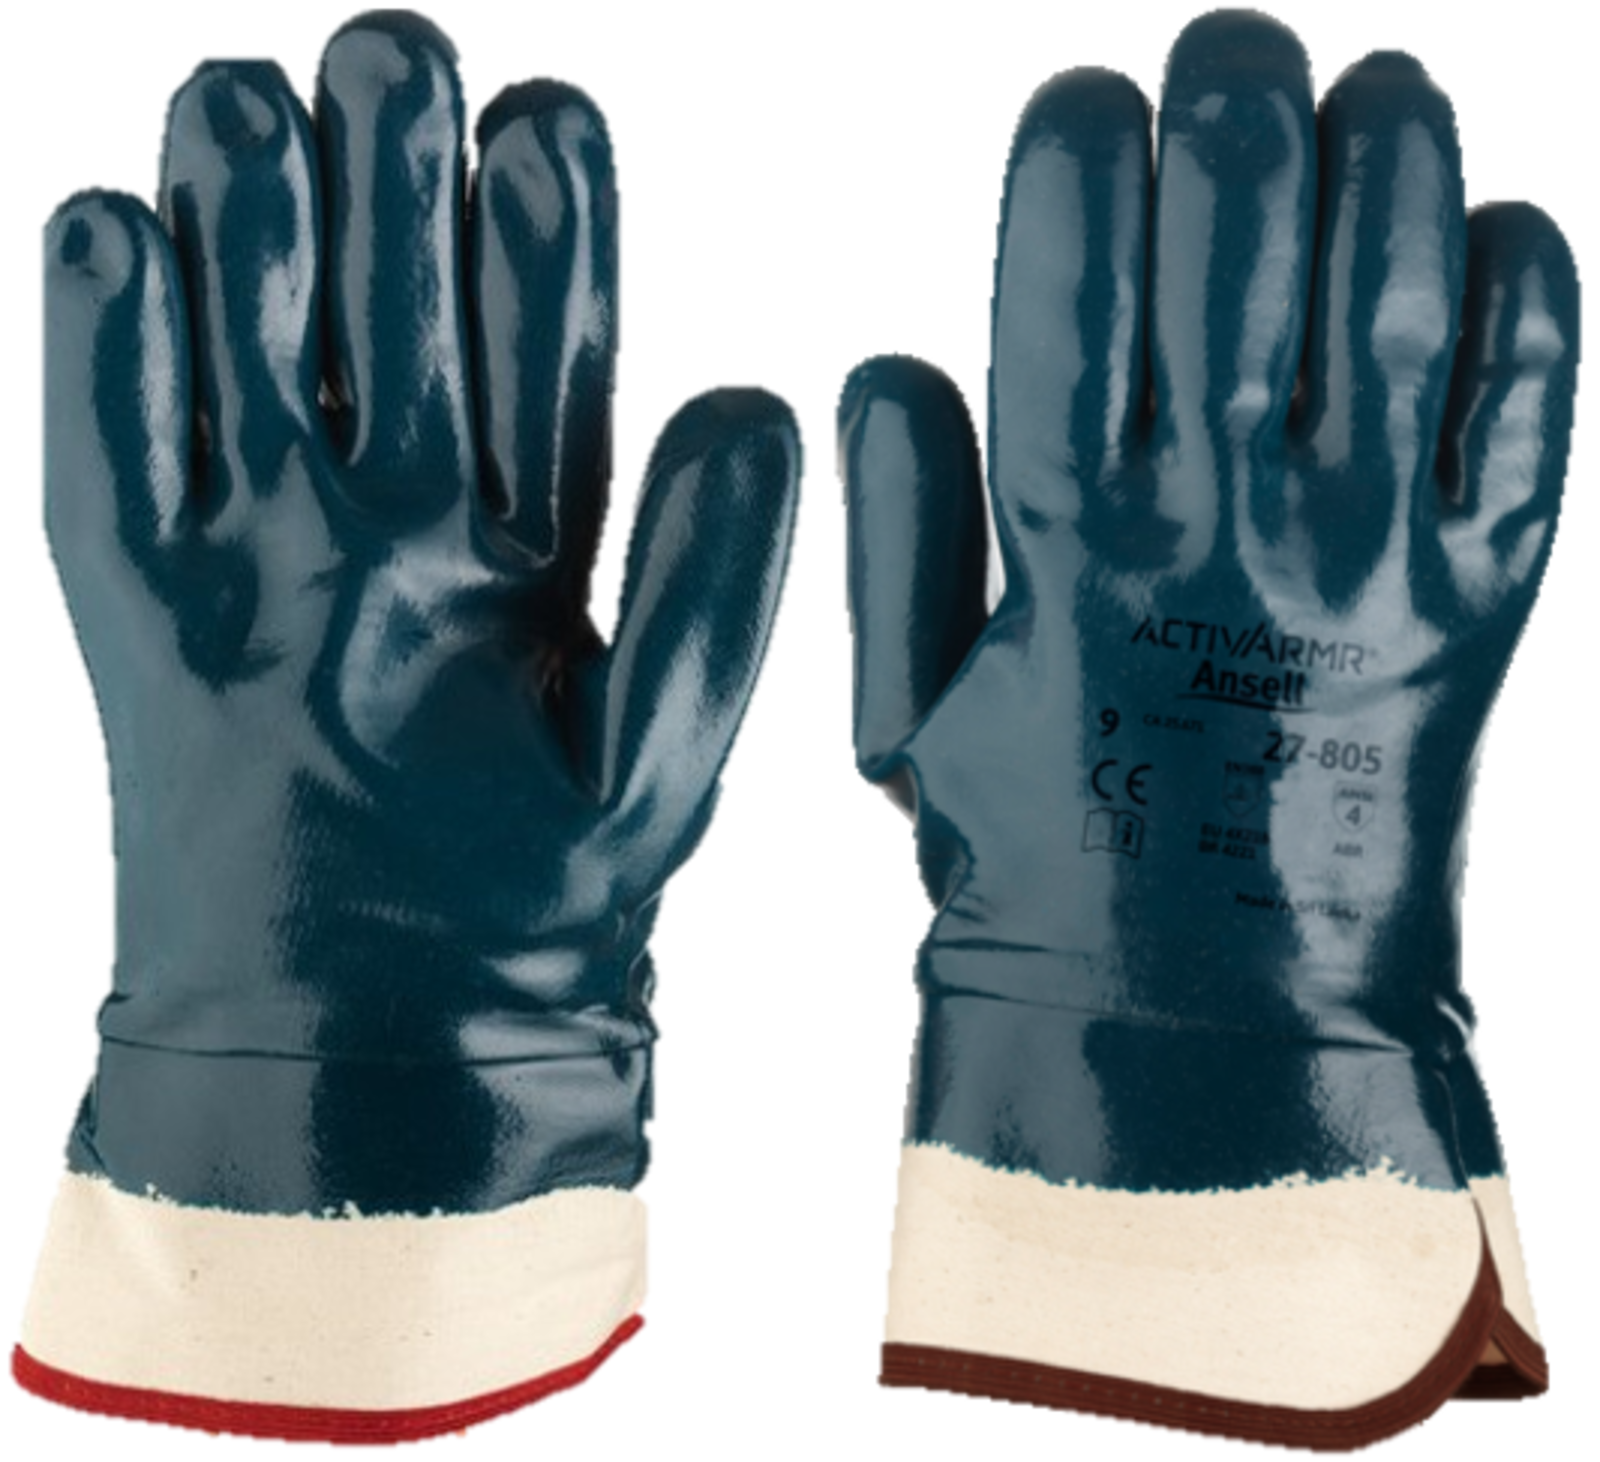 Polomáčané rukavice Ansell 27-805 Hycron  - veľkosť: 10/XL